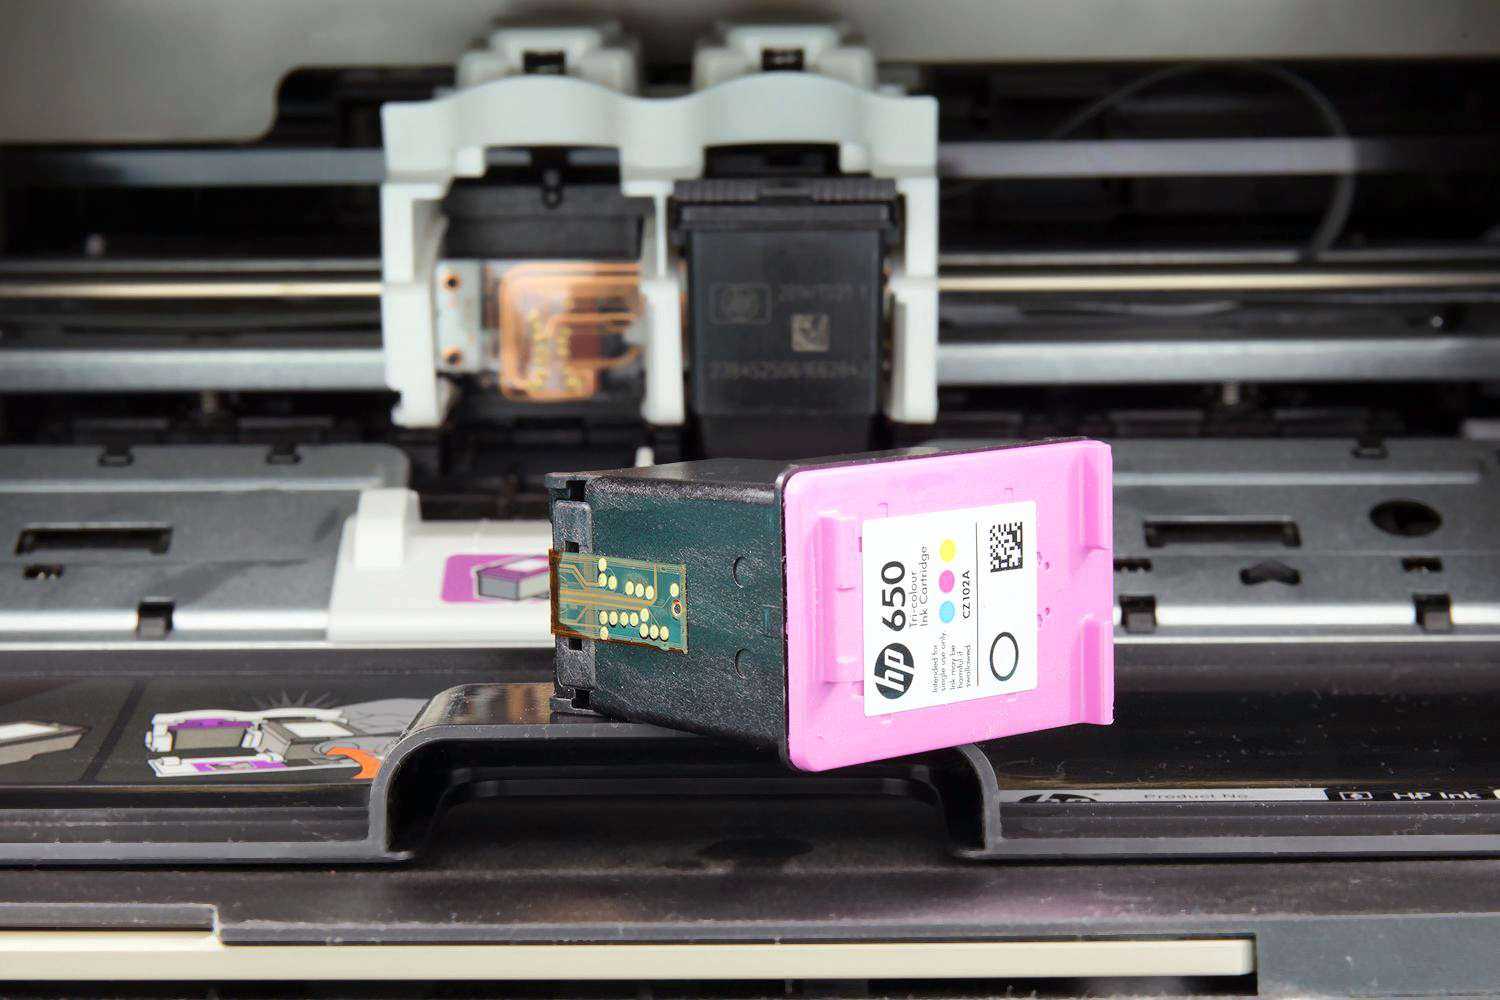 Струйный принтер засох – почему и что делать (как восстановить головку, картриджи) « решение проблем « база знаний многочернил.ру